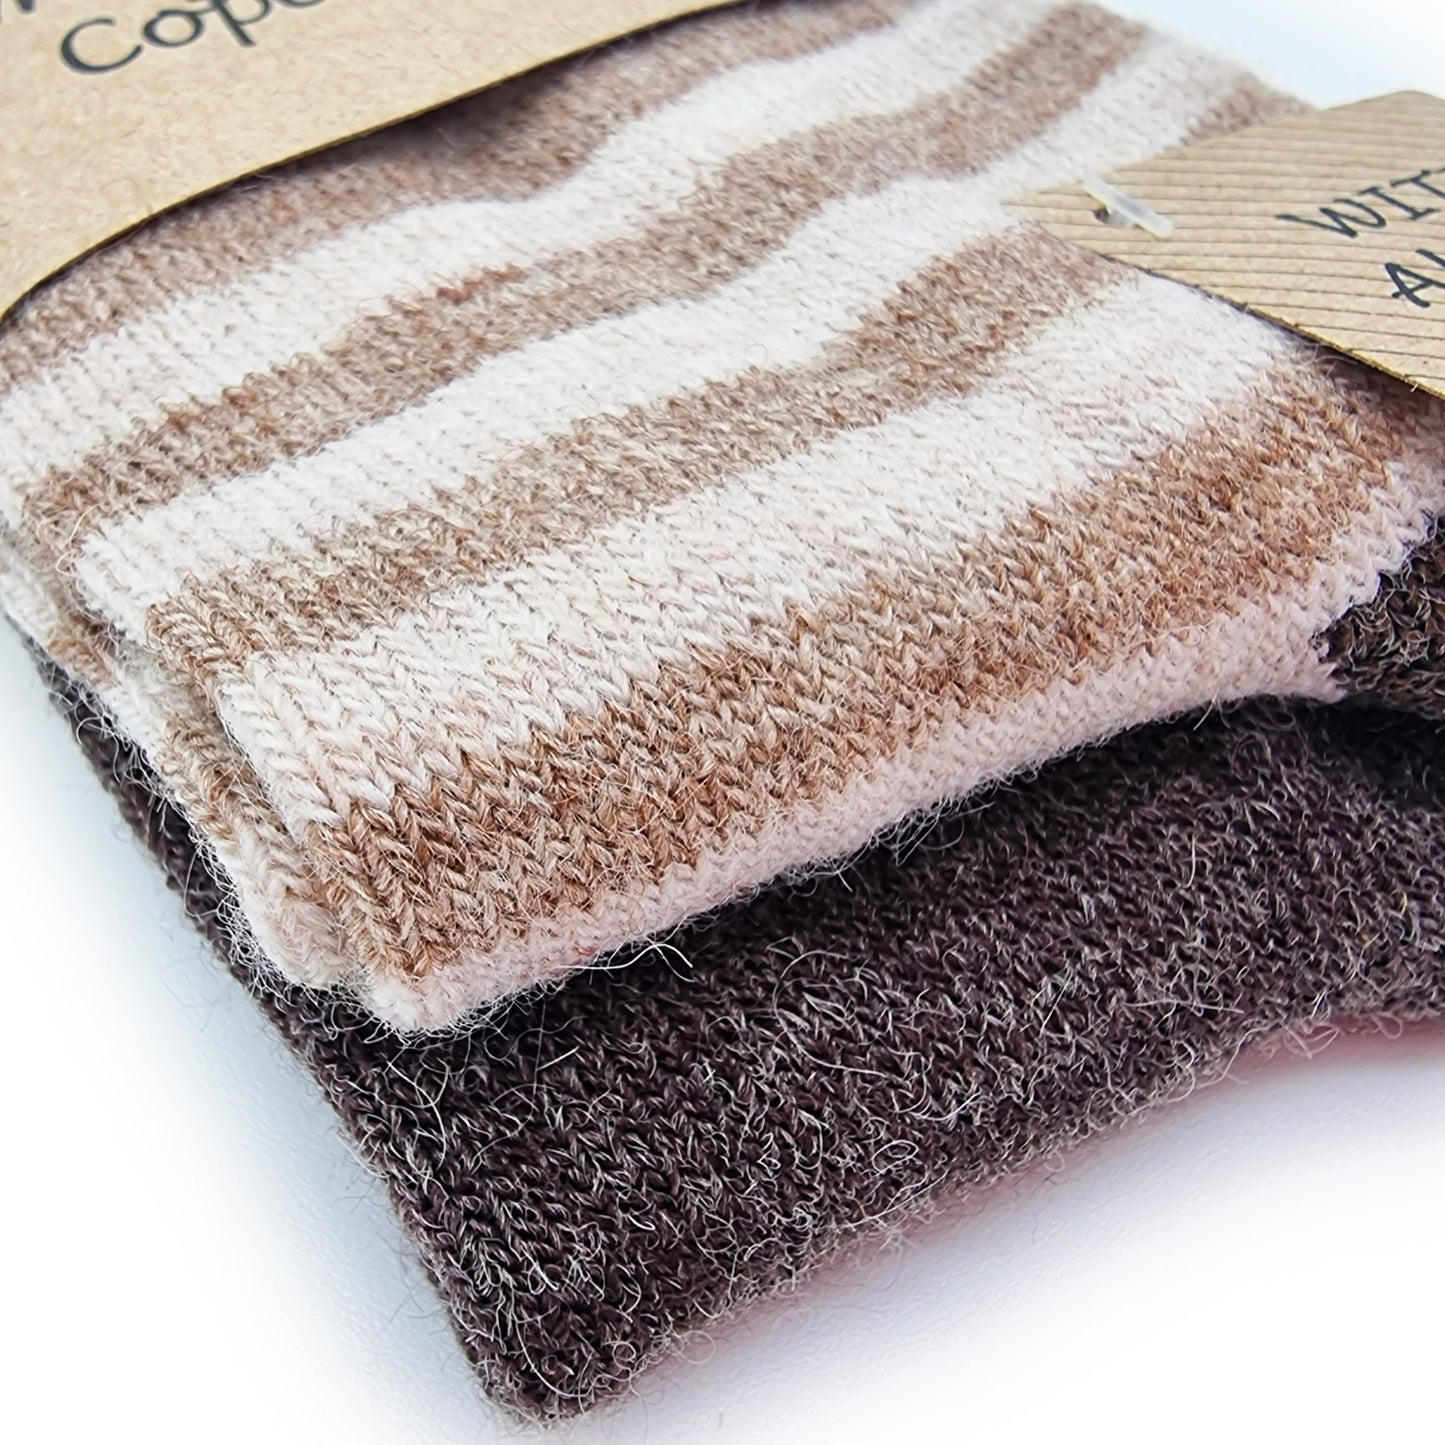 Chaussettes rayées en laine d'alpaga, 2 paires (marron/beige)